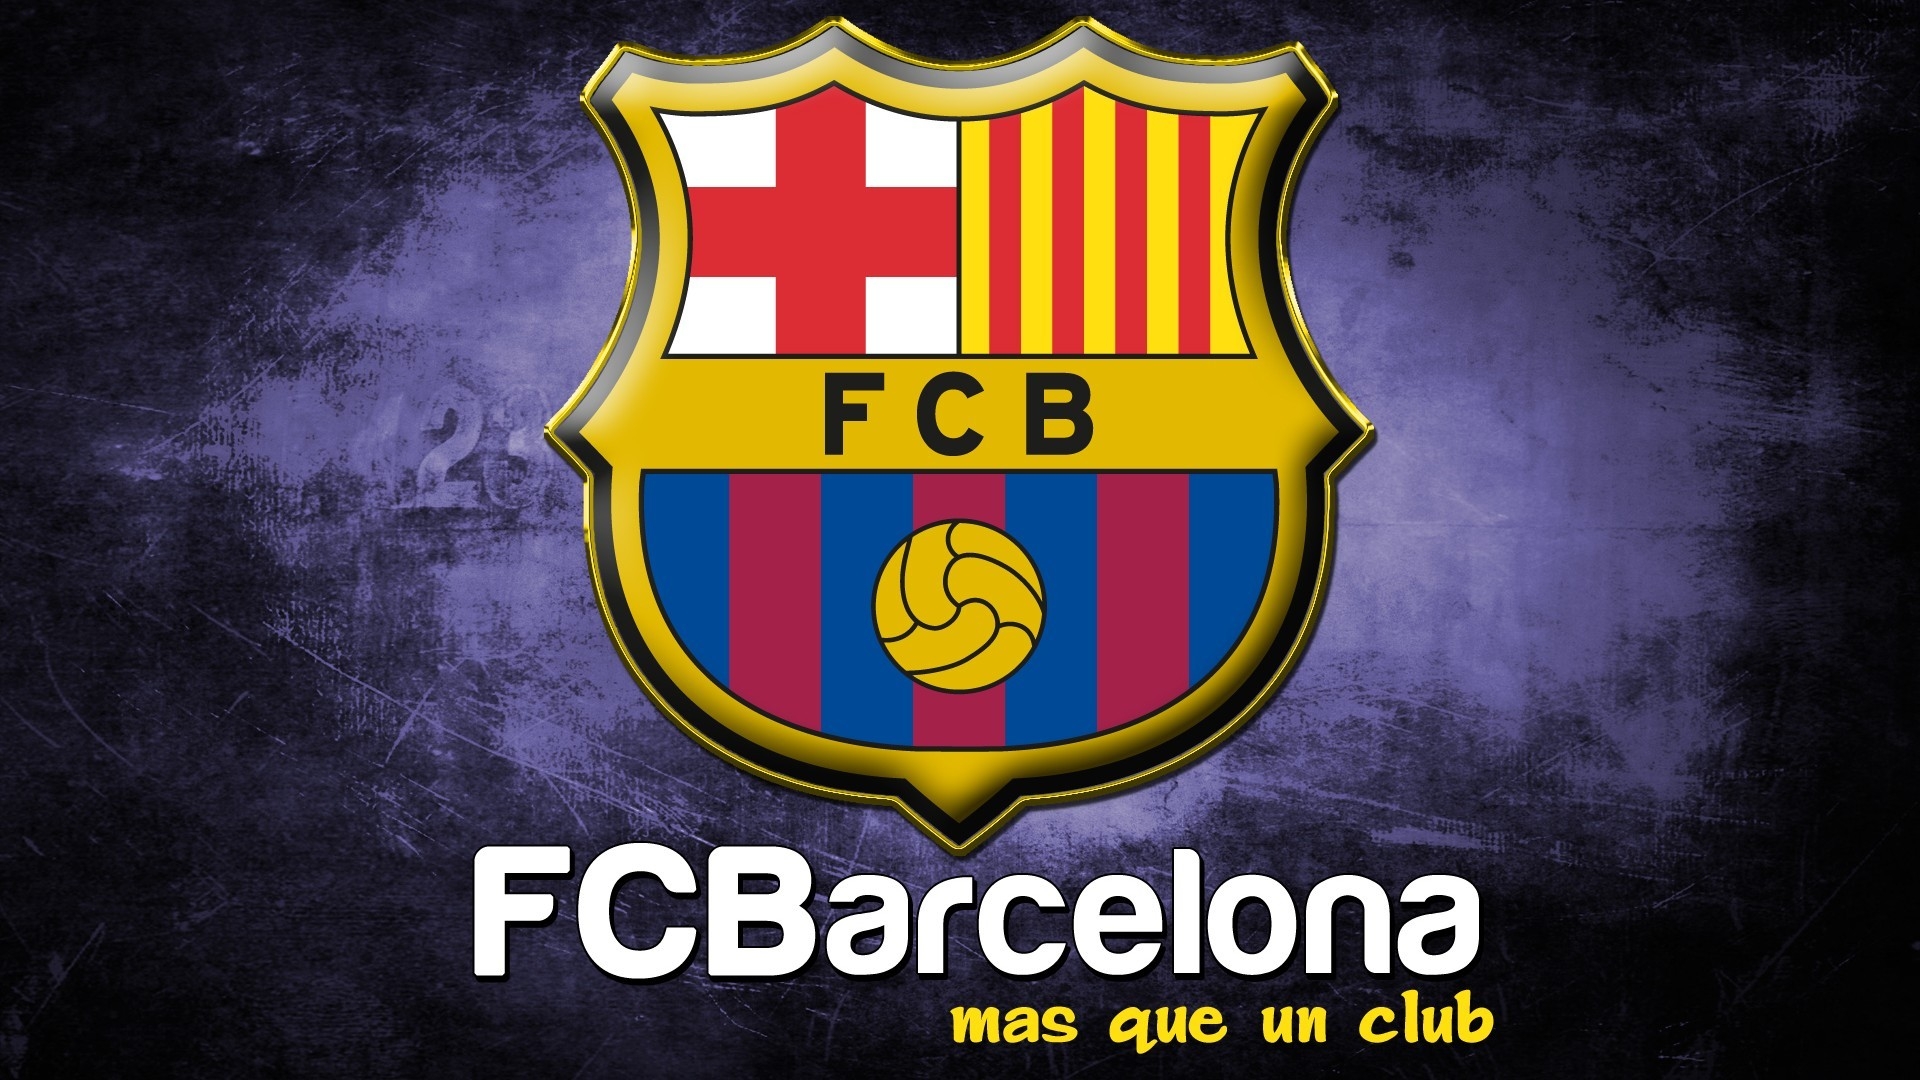 Logo of Barcelona for 1920 x 1080 HDTV 1080p resolution